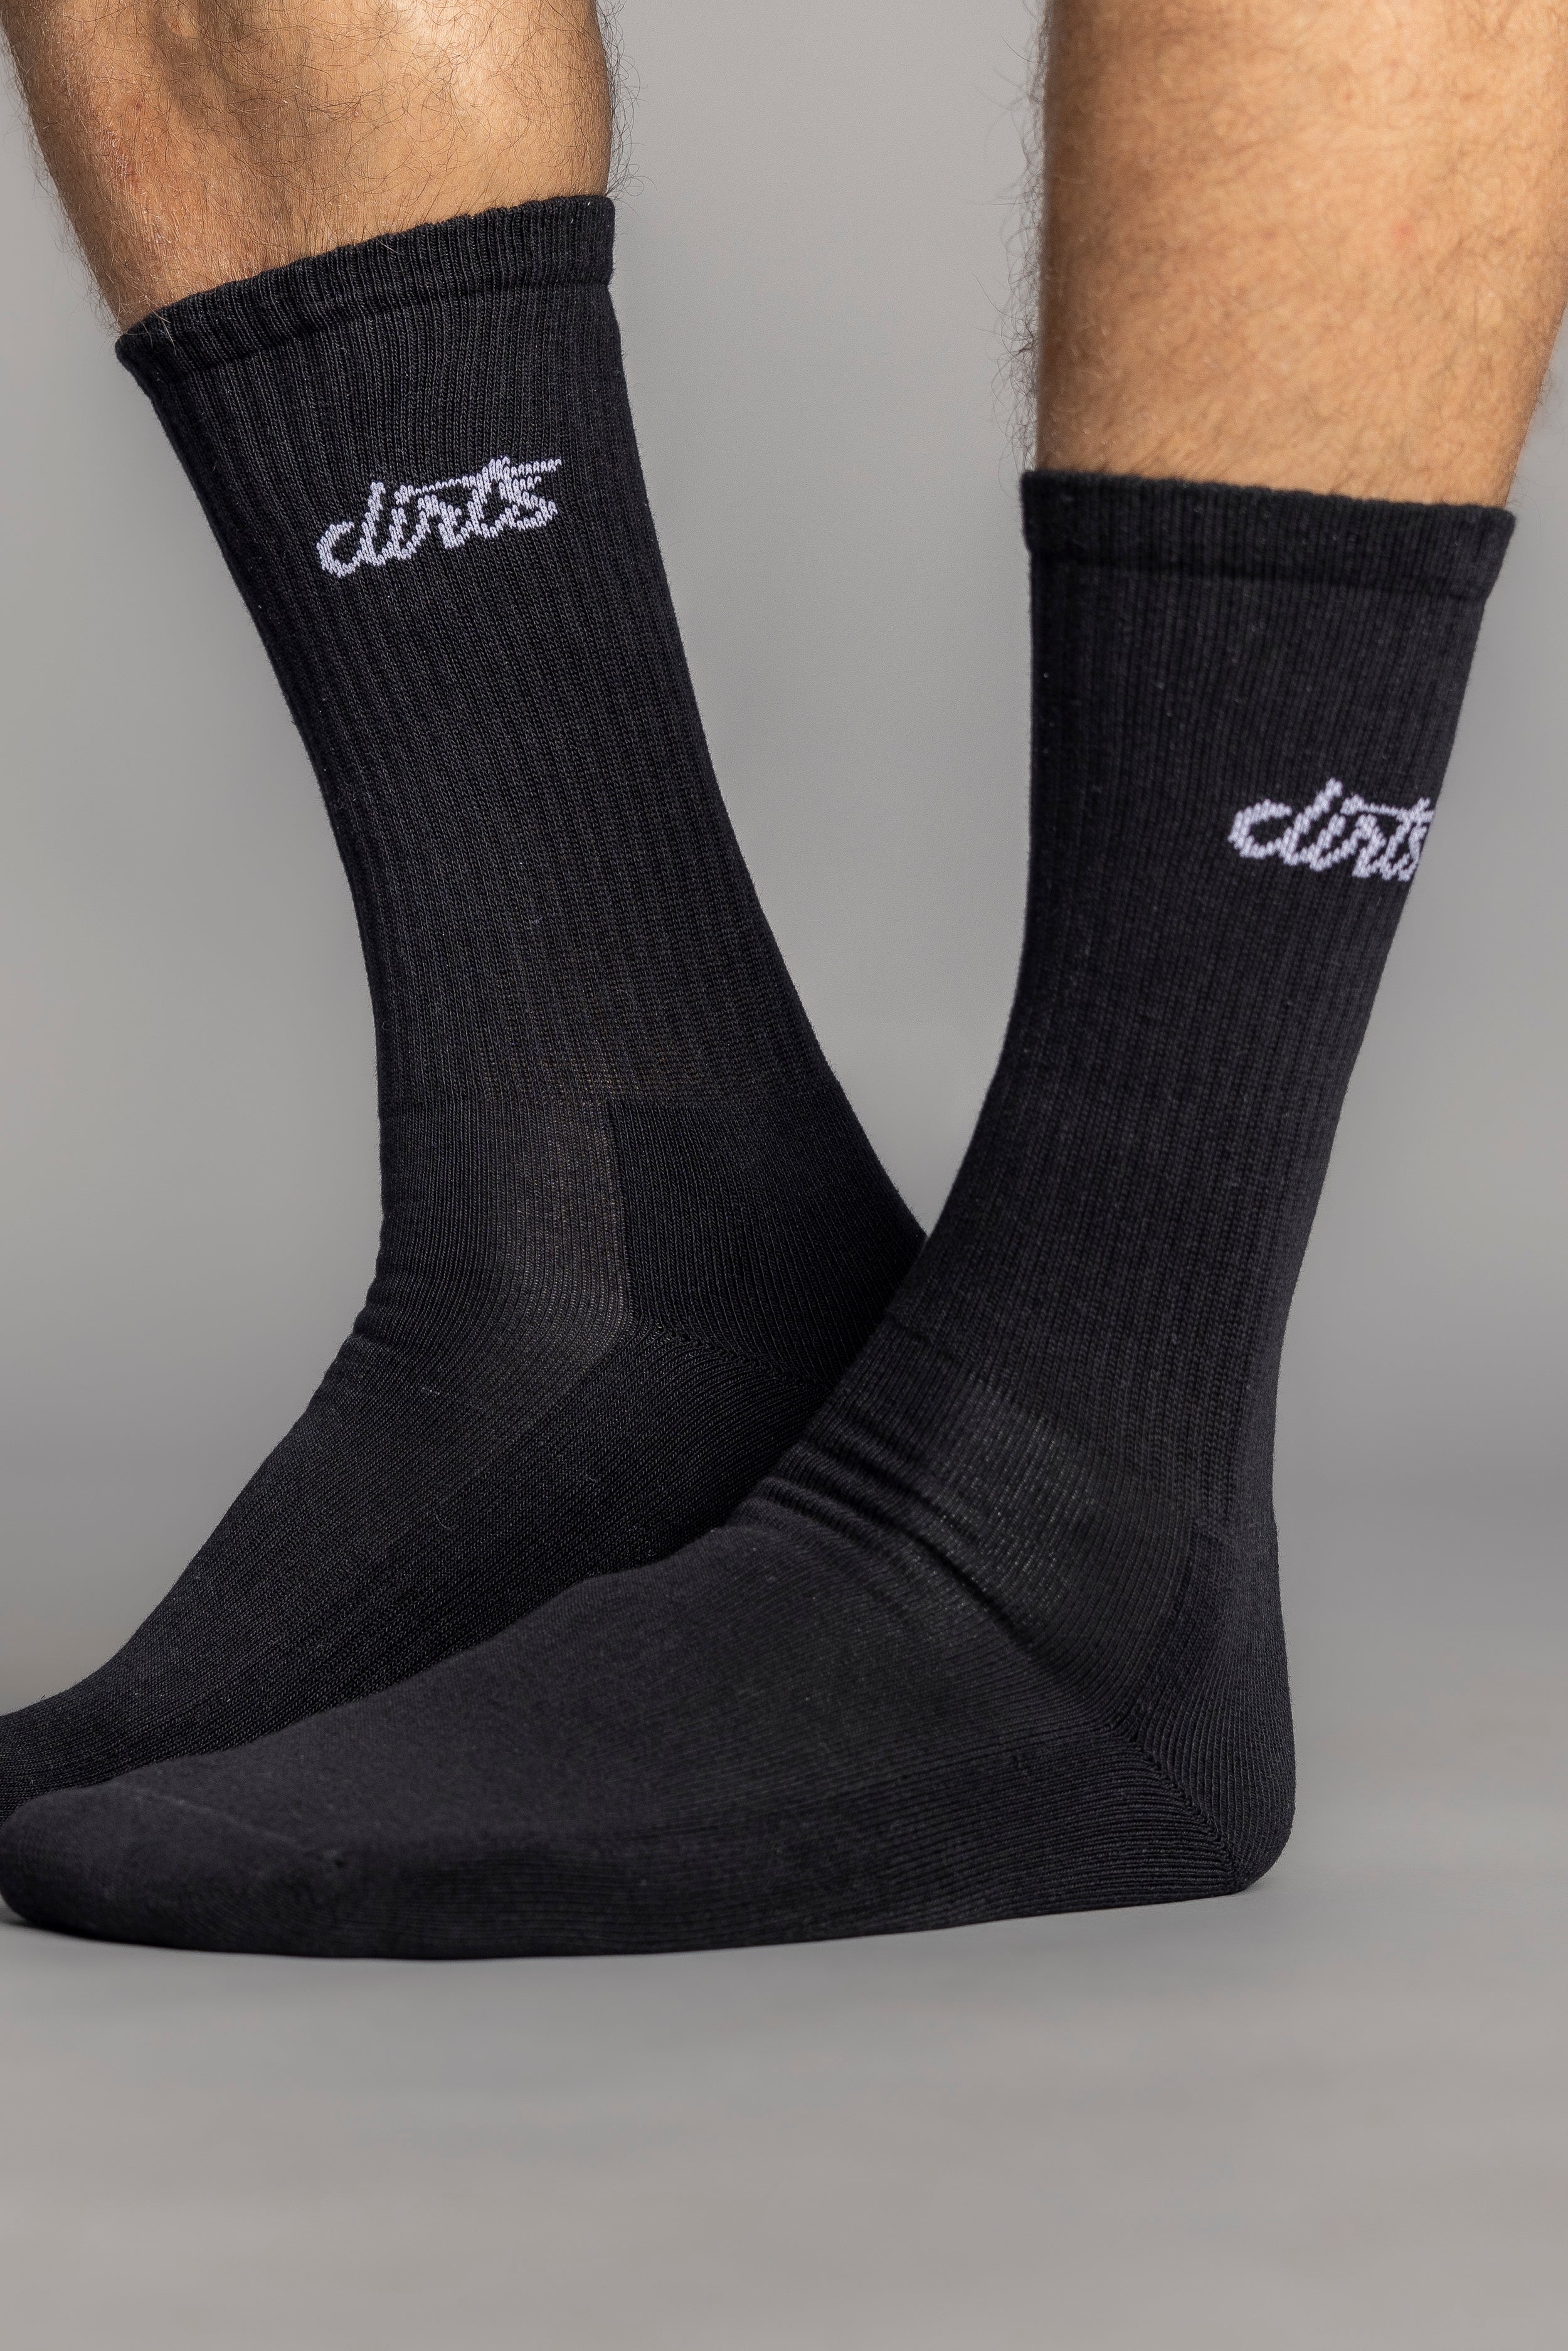 Chaussettes noires Classic Logo en coton biologique de DIRTS